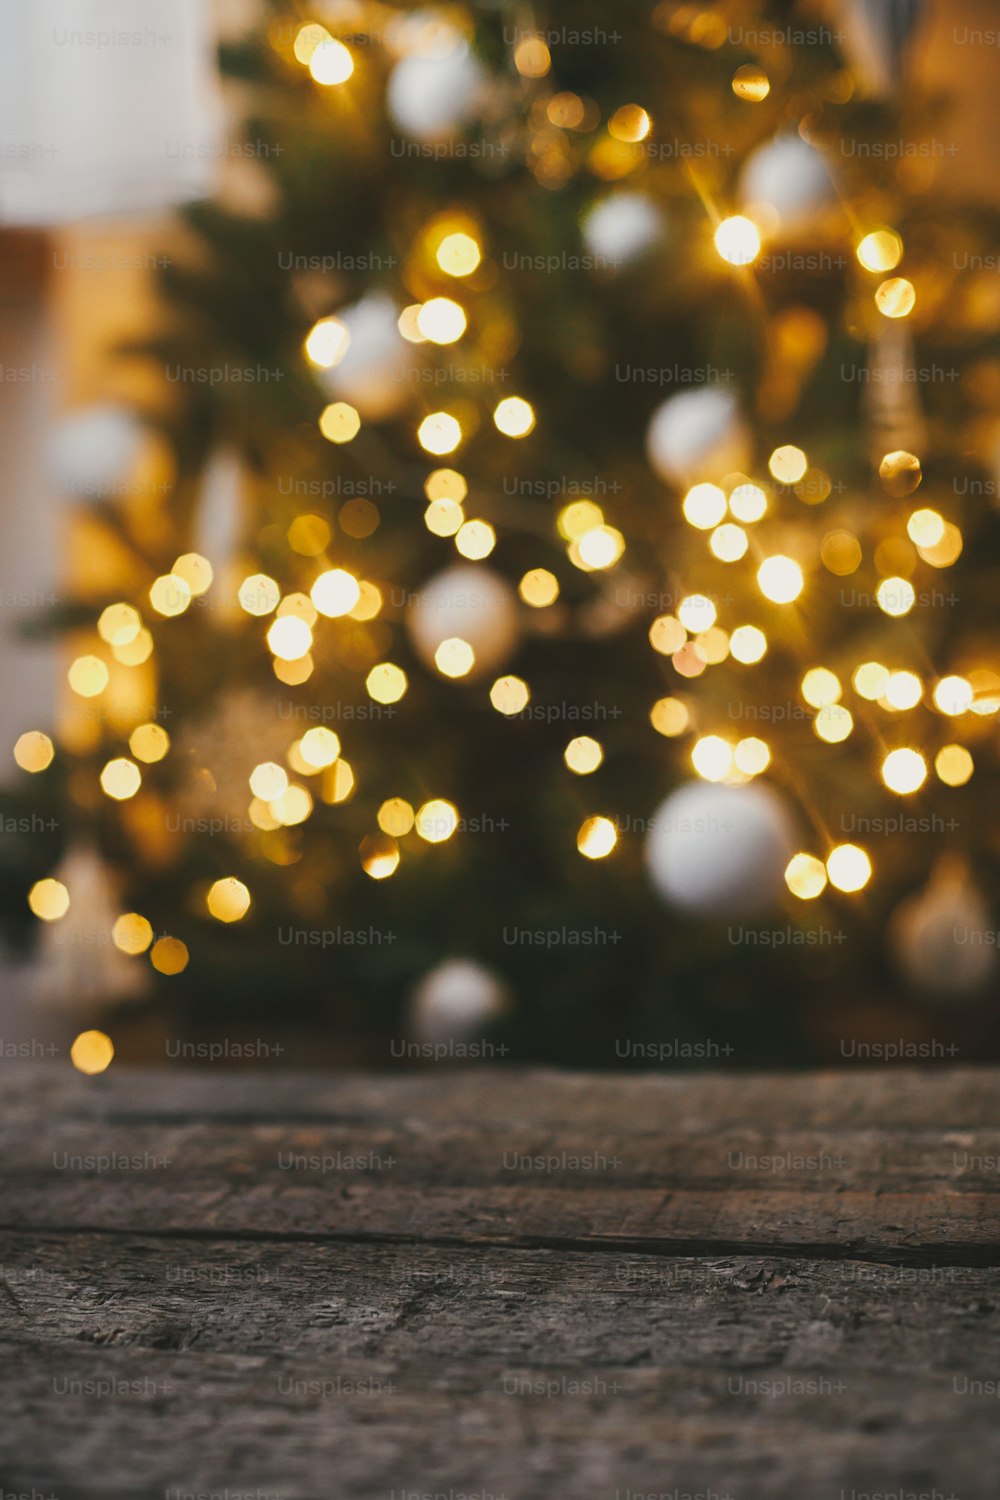 Fondo de Navidad. Madera rústica sobre fondo de luces de árbol de navidad bokeh dorado. Espacio para el texto. ¡Feliz Navidad y Felices Fiestas!  Nochebuena atmosférica